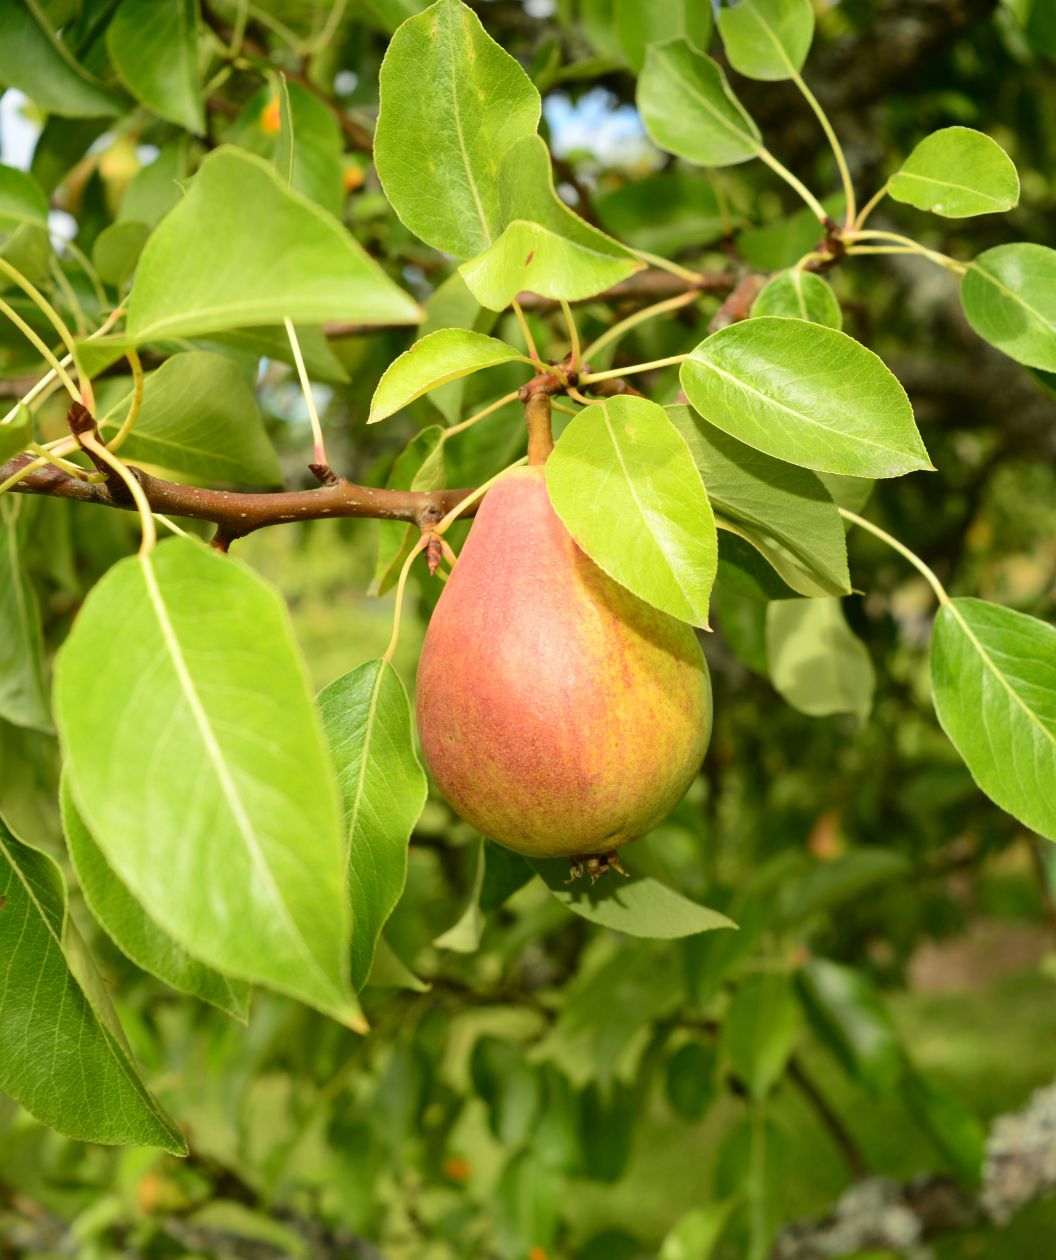 Clapp's Favorite European Pear